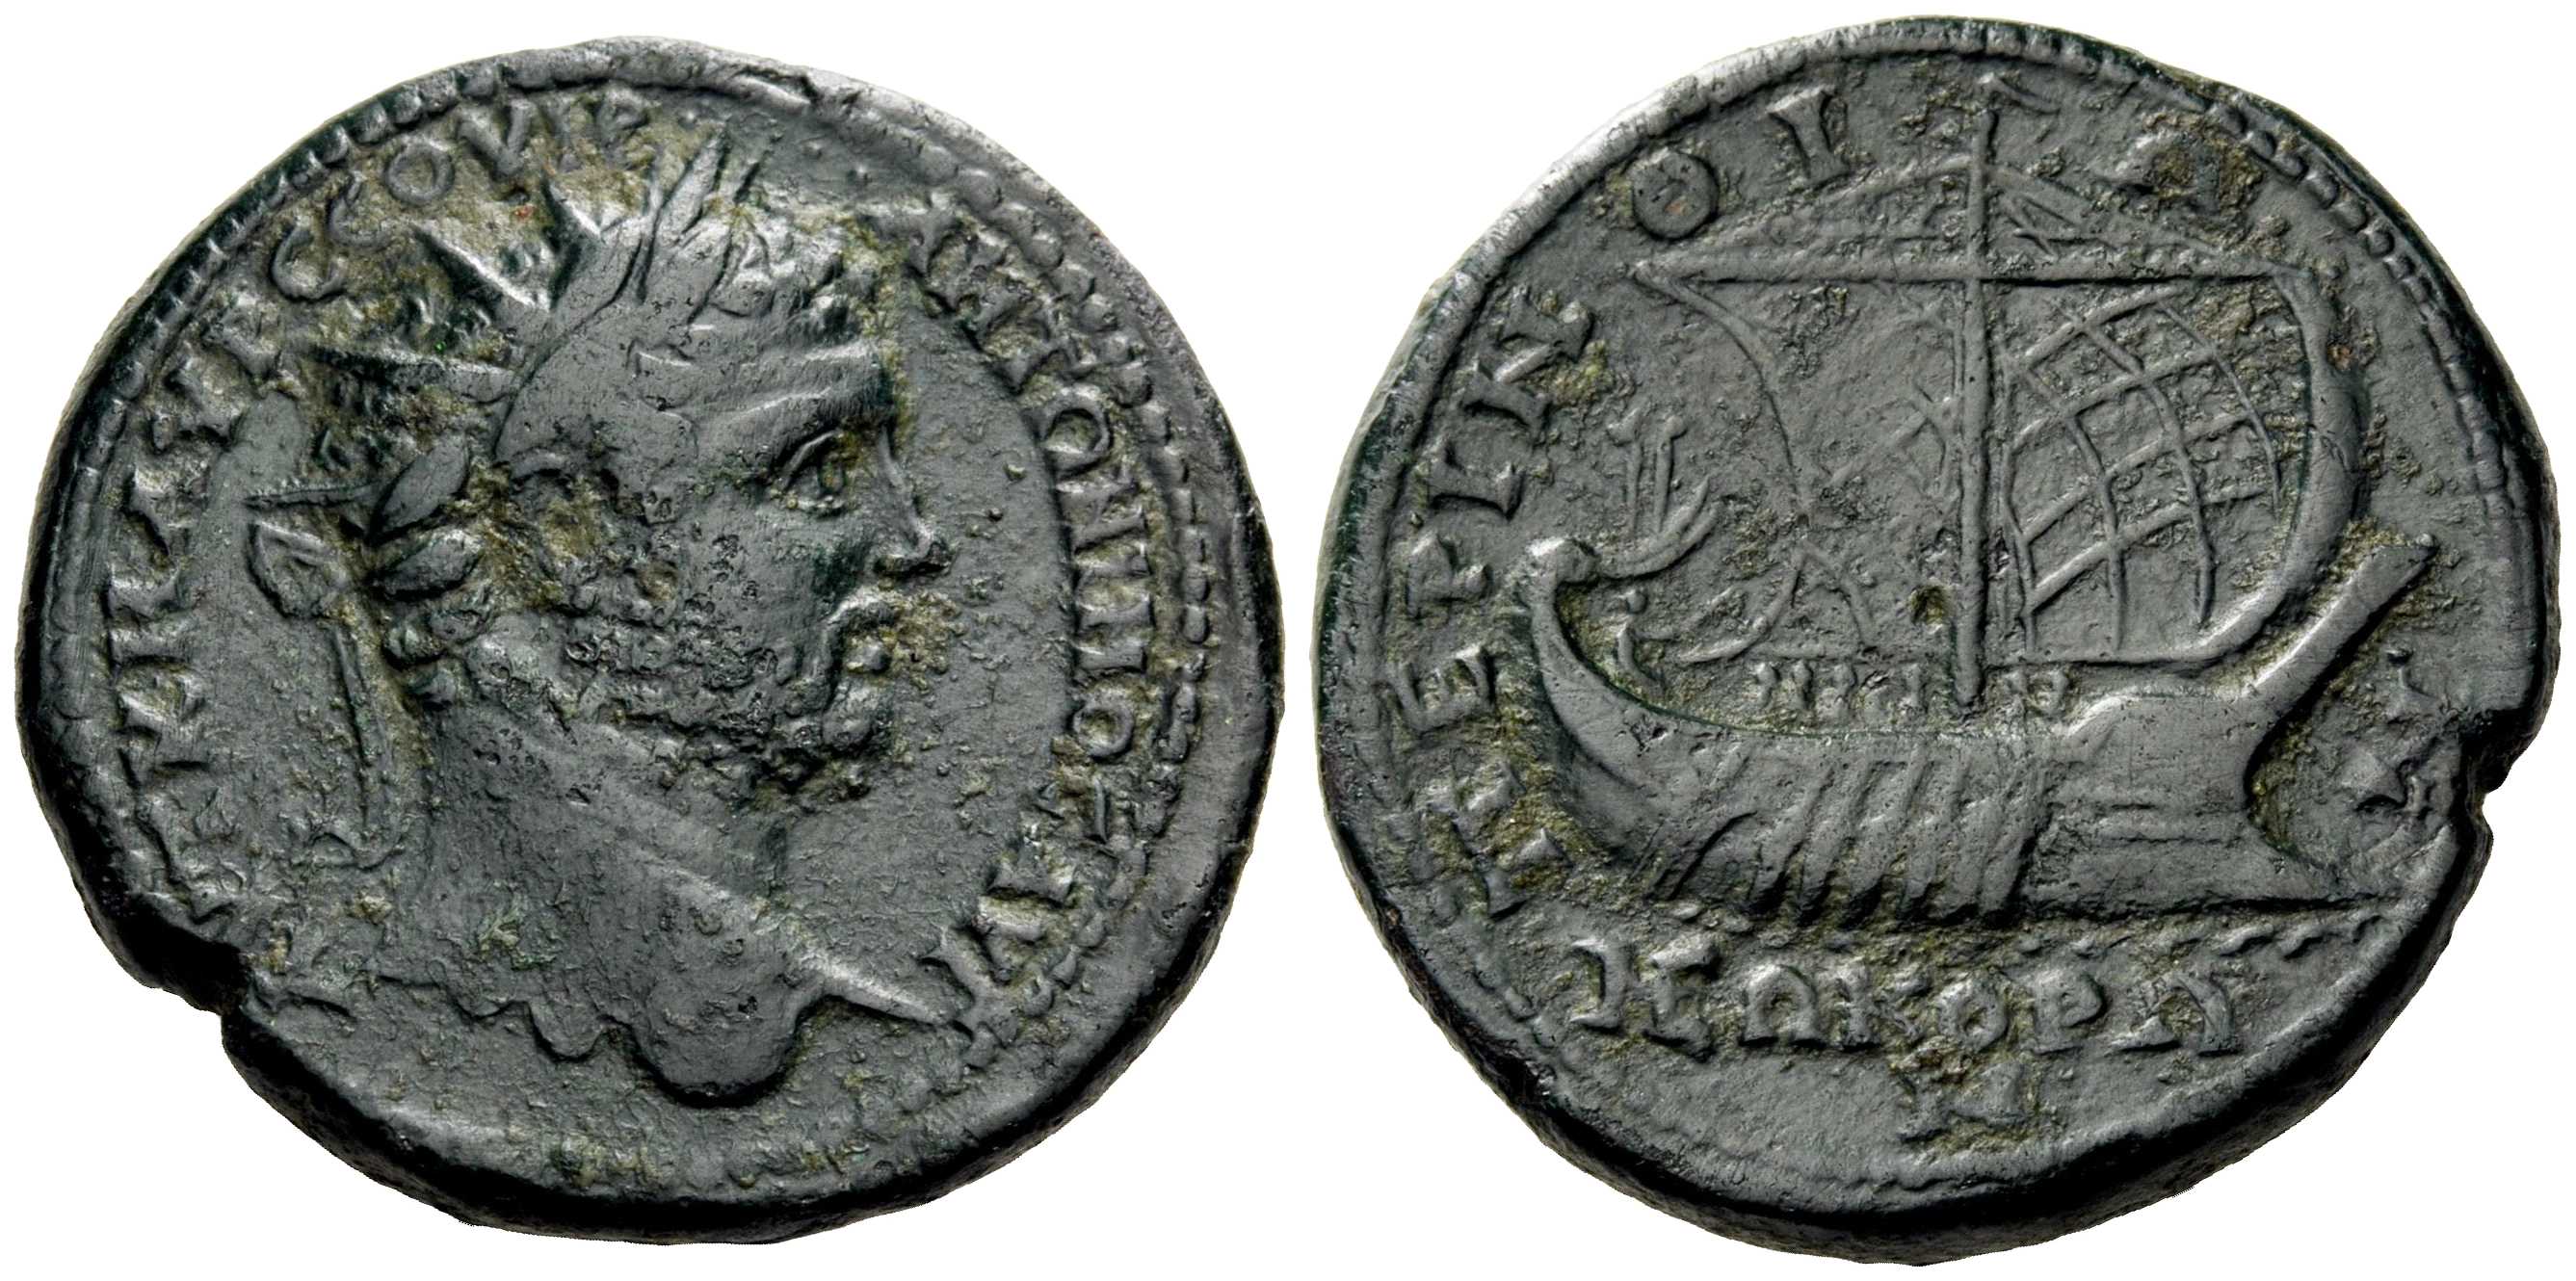 v3940 Perinthus Thracia Caracalla AE